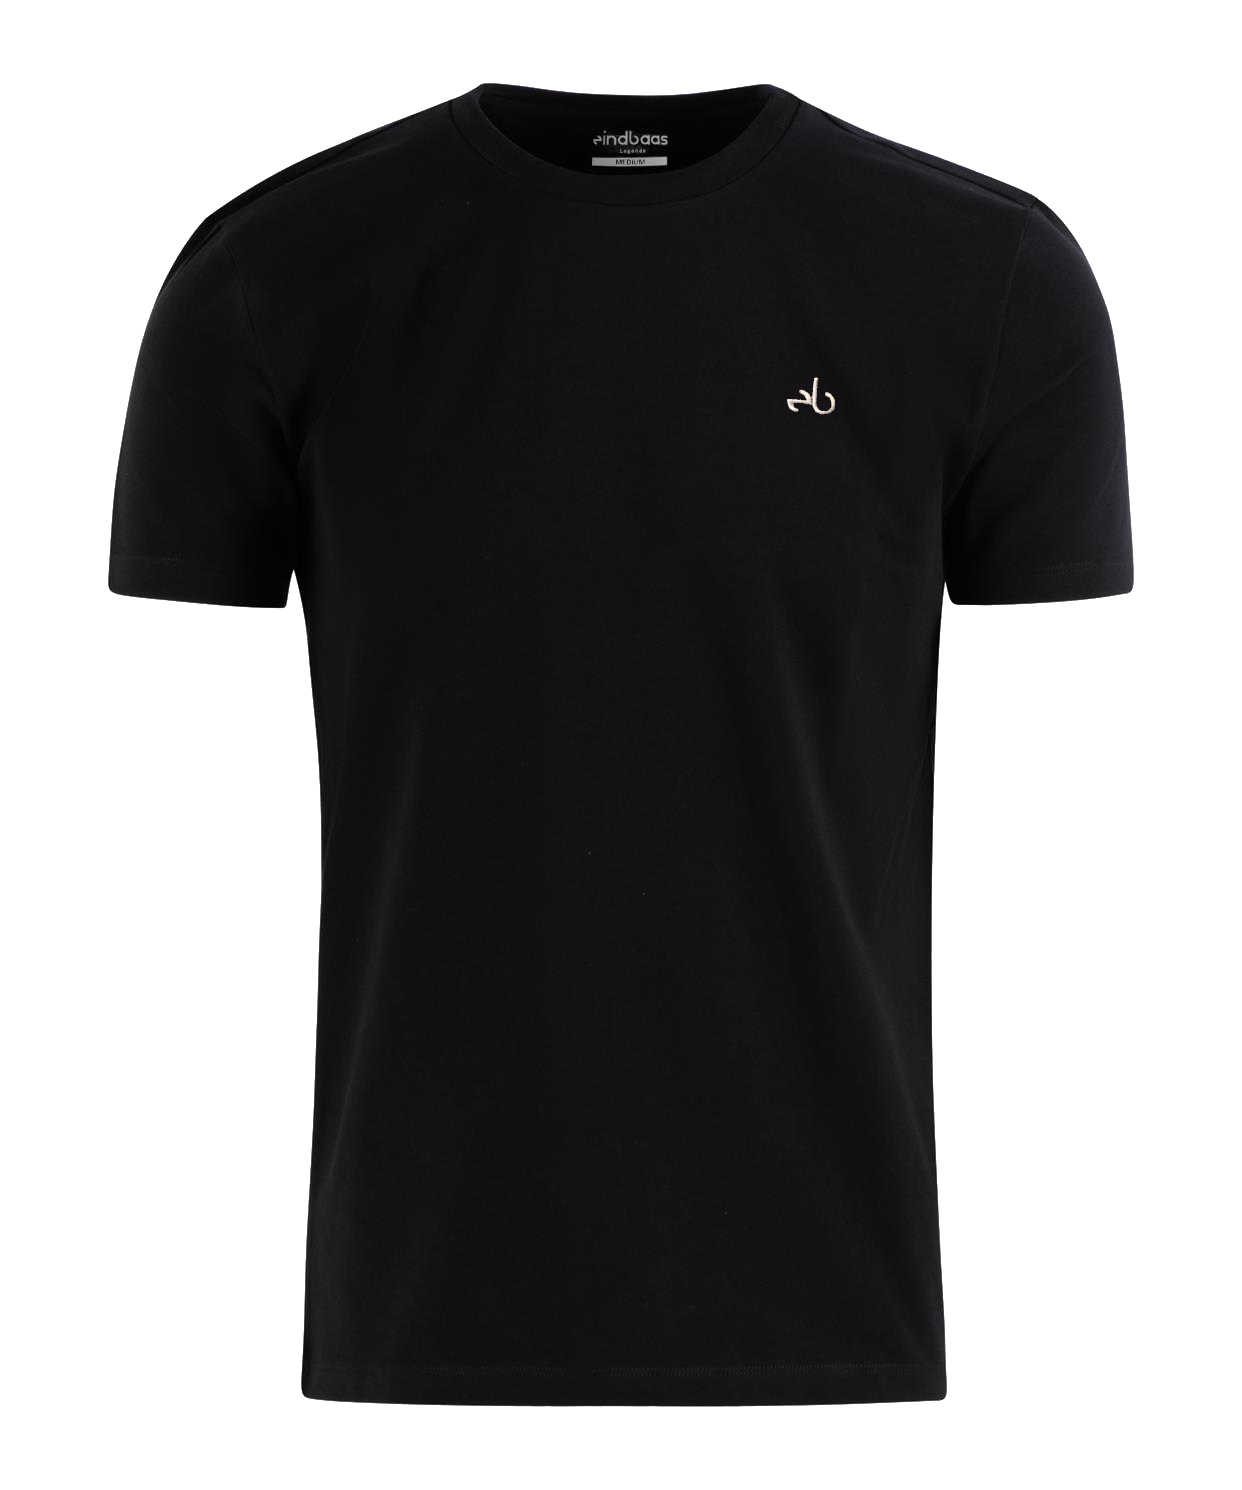 Legend T-Shirt - Slim fit - eindbaas - Black/White